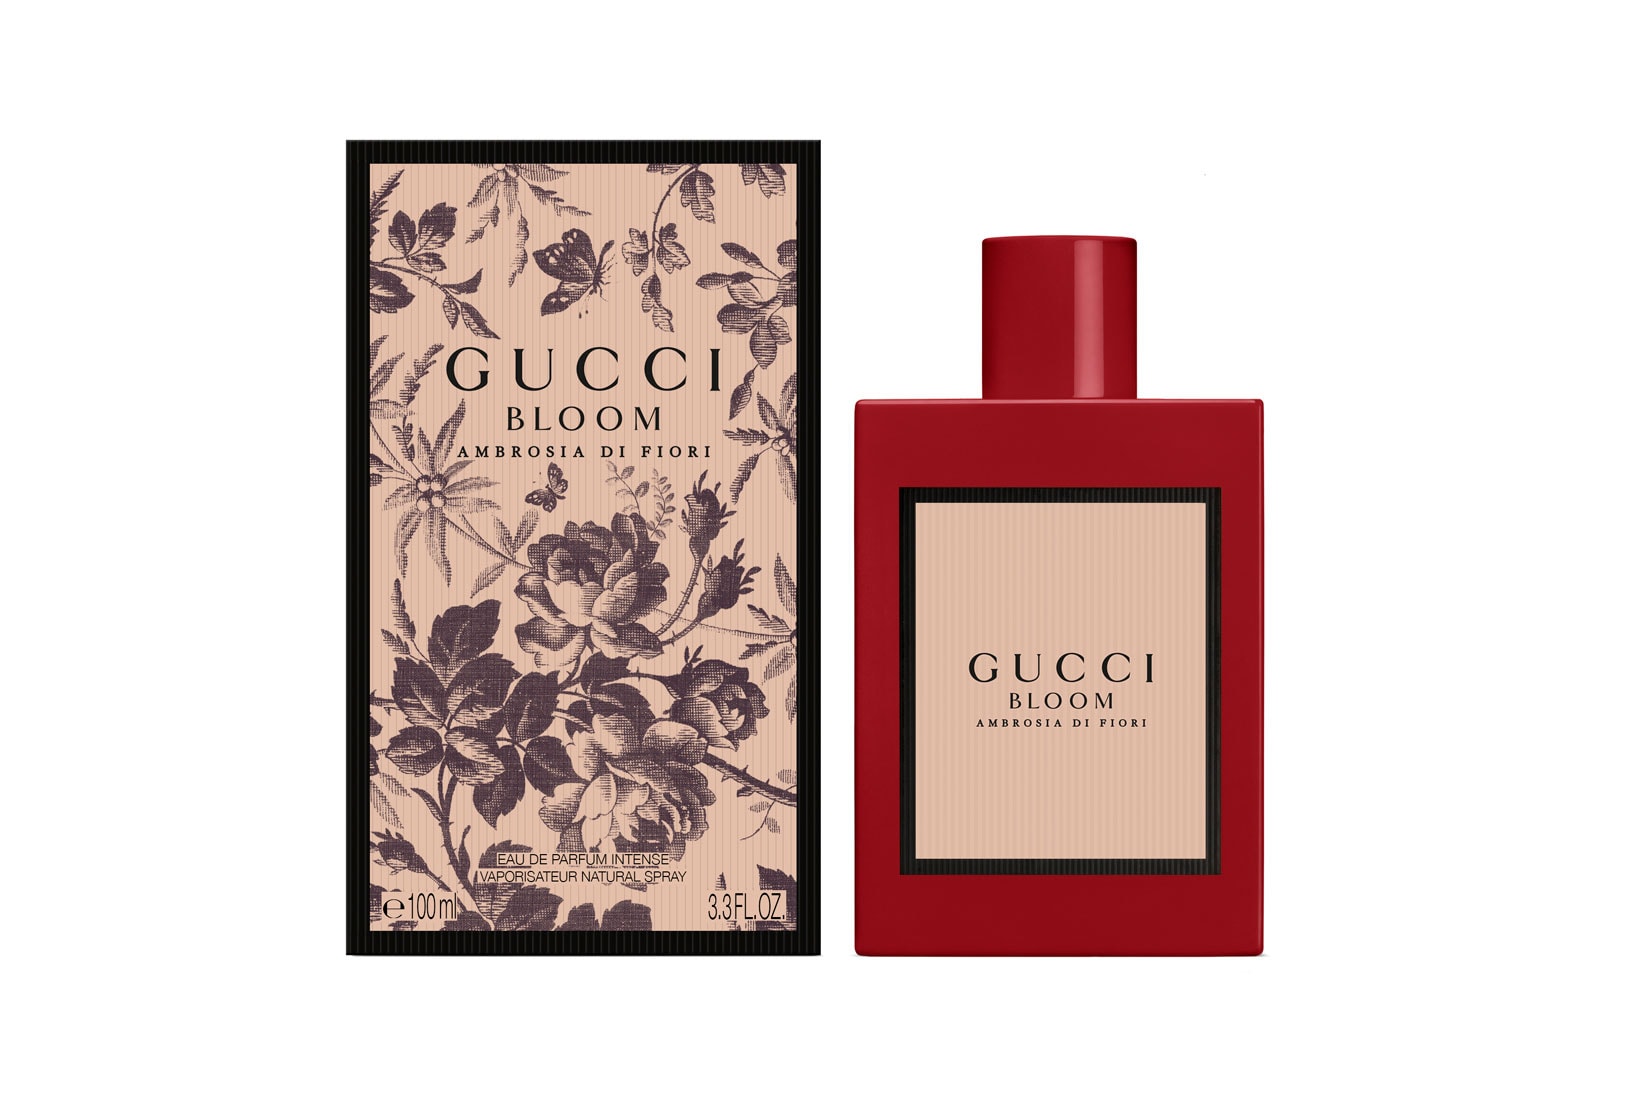 Gucci Bloom Ambrosia di Fiori Perfume Fragrance